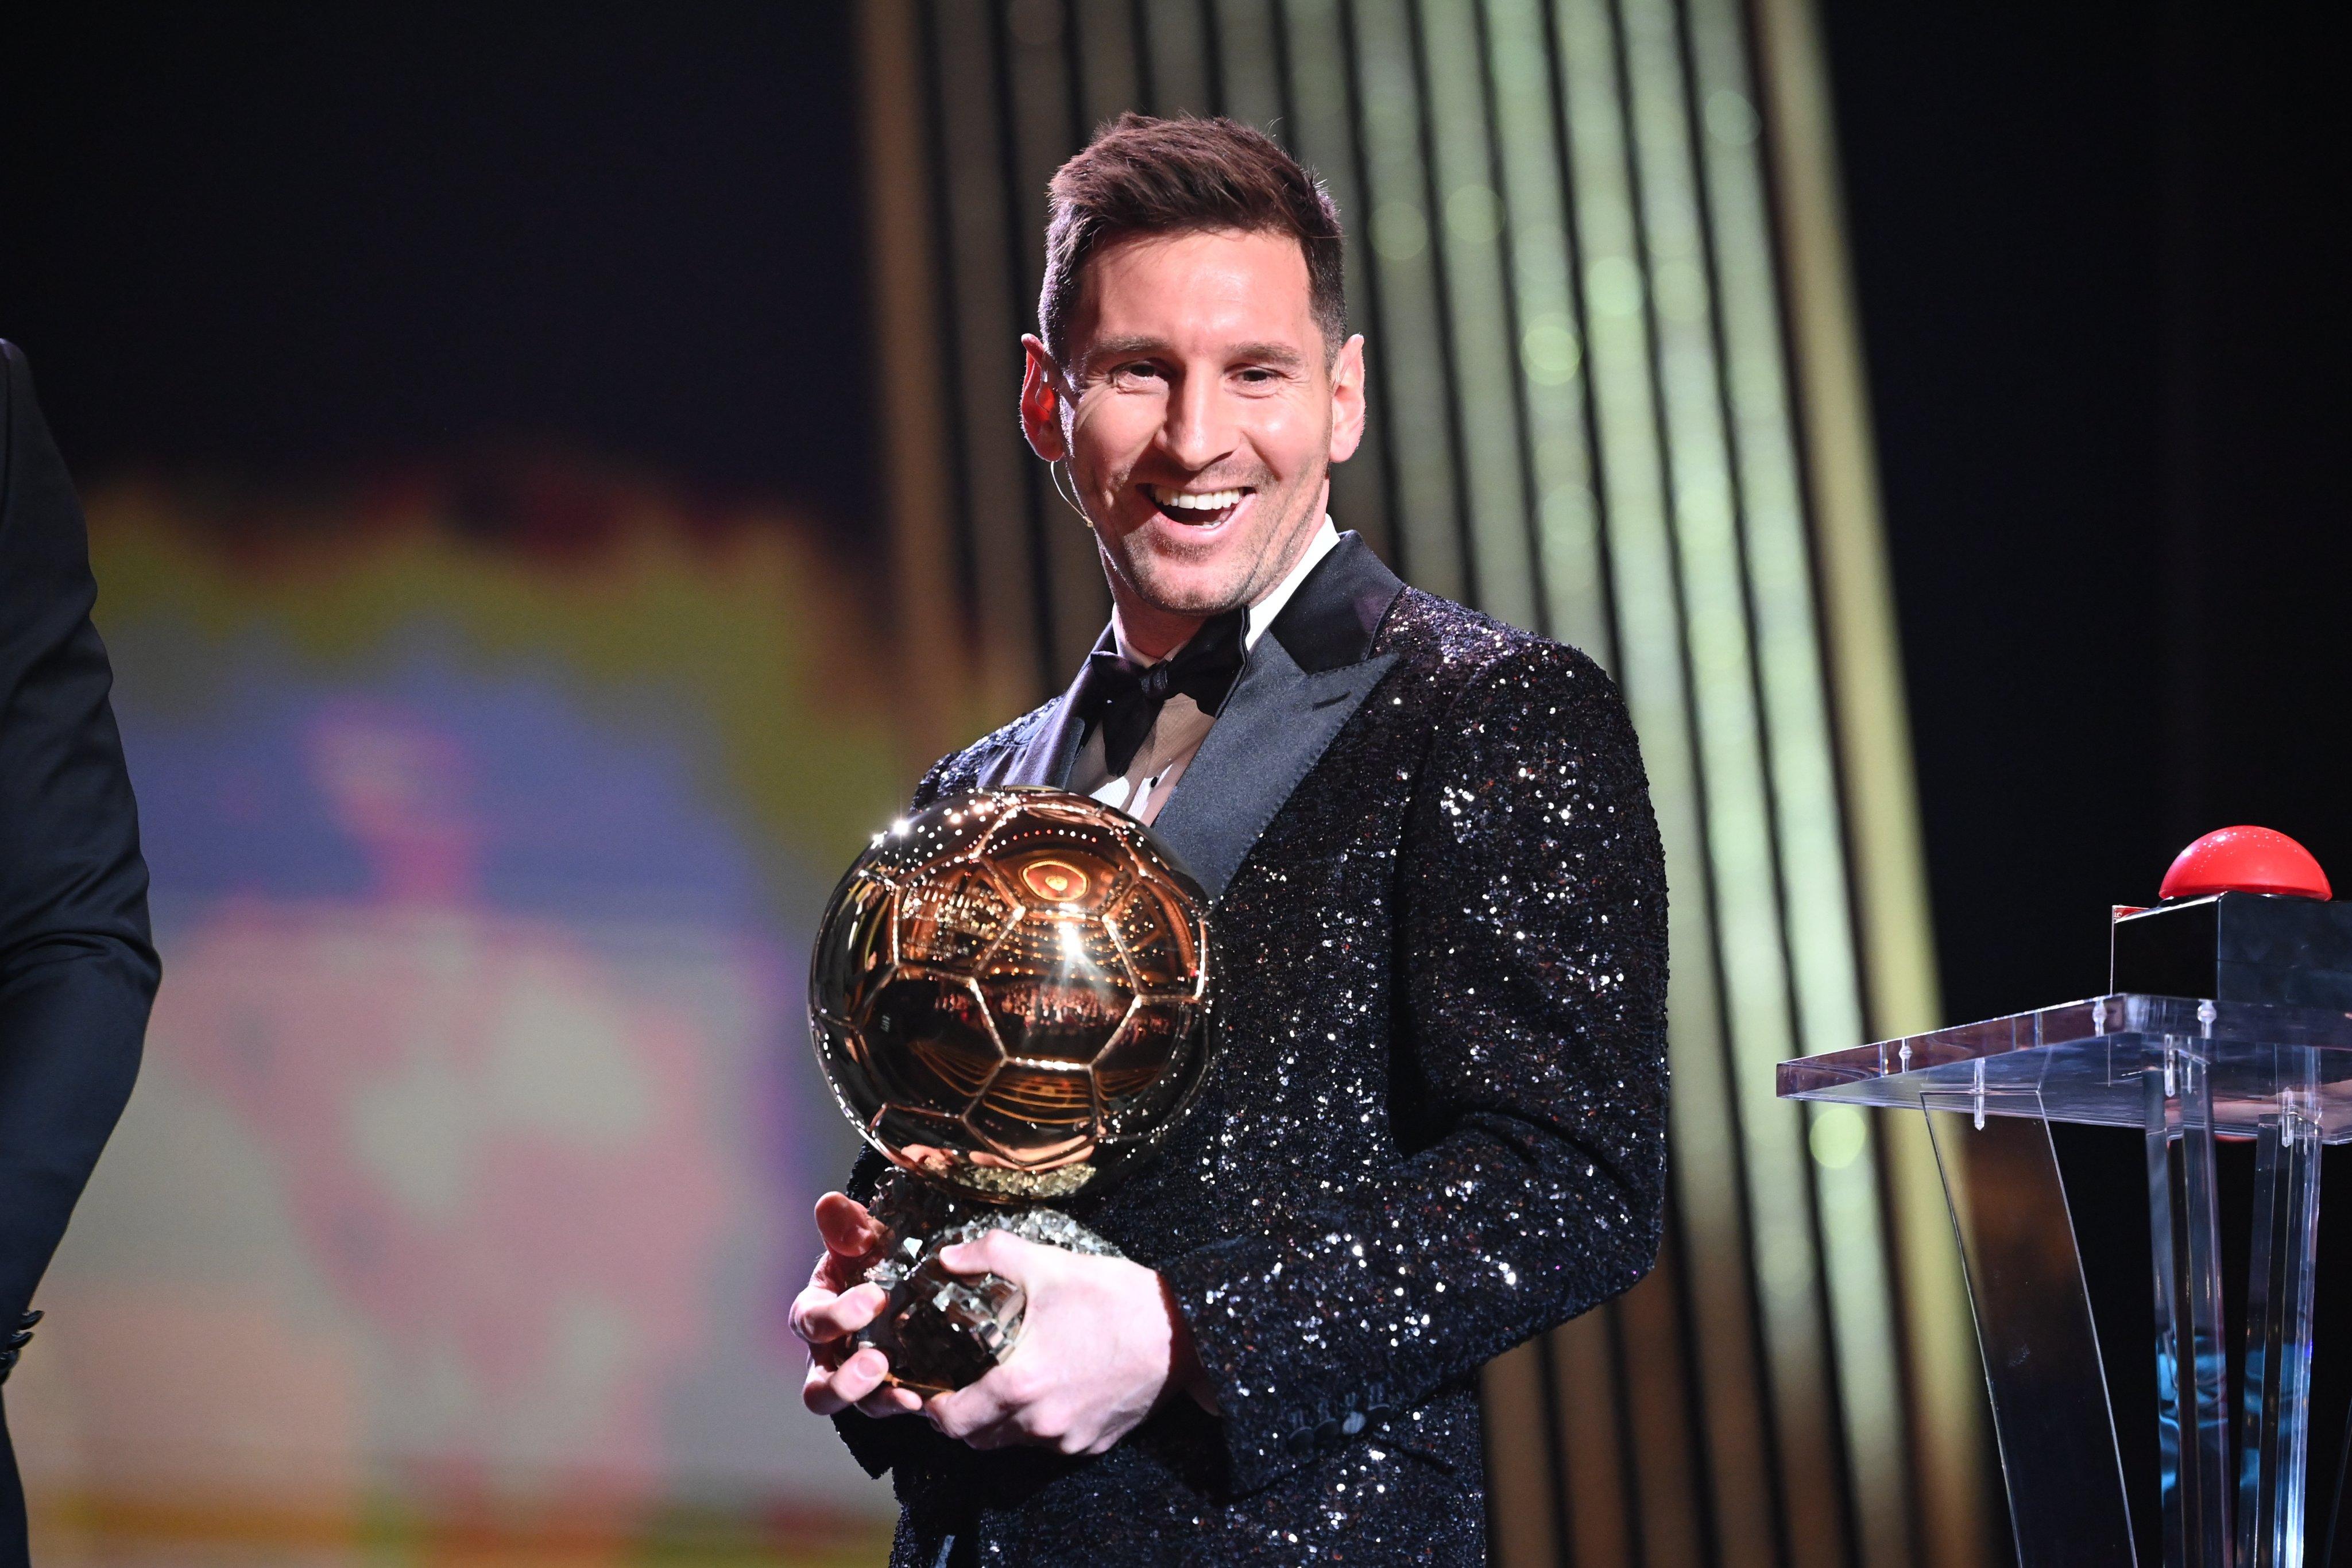 Messi: Hãy xem bức ảnh của Messi, siêu sao bóng đá nổi tiếng thế giới. Anh ấy là một trong những cầu thủ xuất sắc nhất mọi thời đại và một biểu tượng của sự chuyên nghiệp, cống hiến và tài năng trong bóng đá.